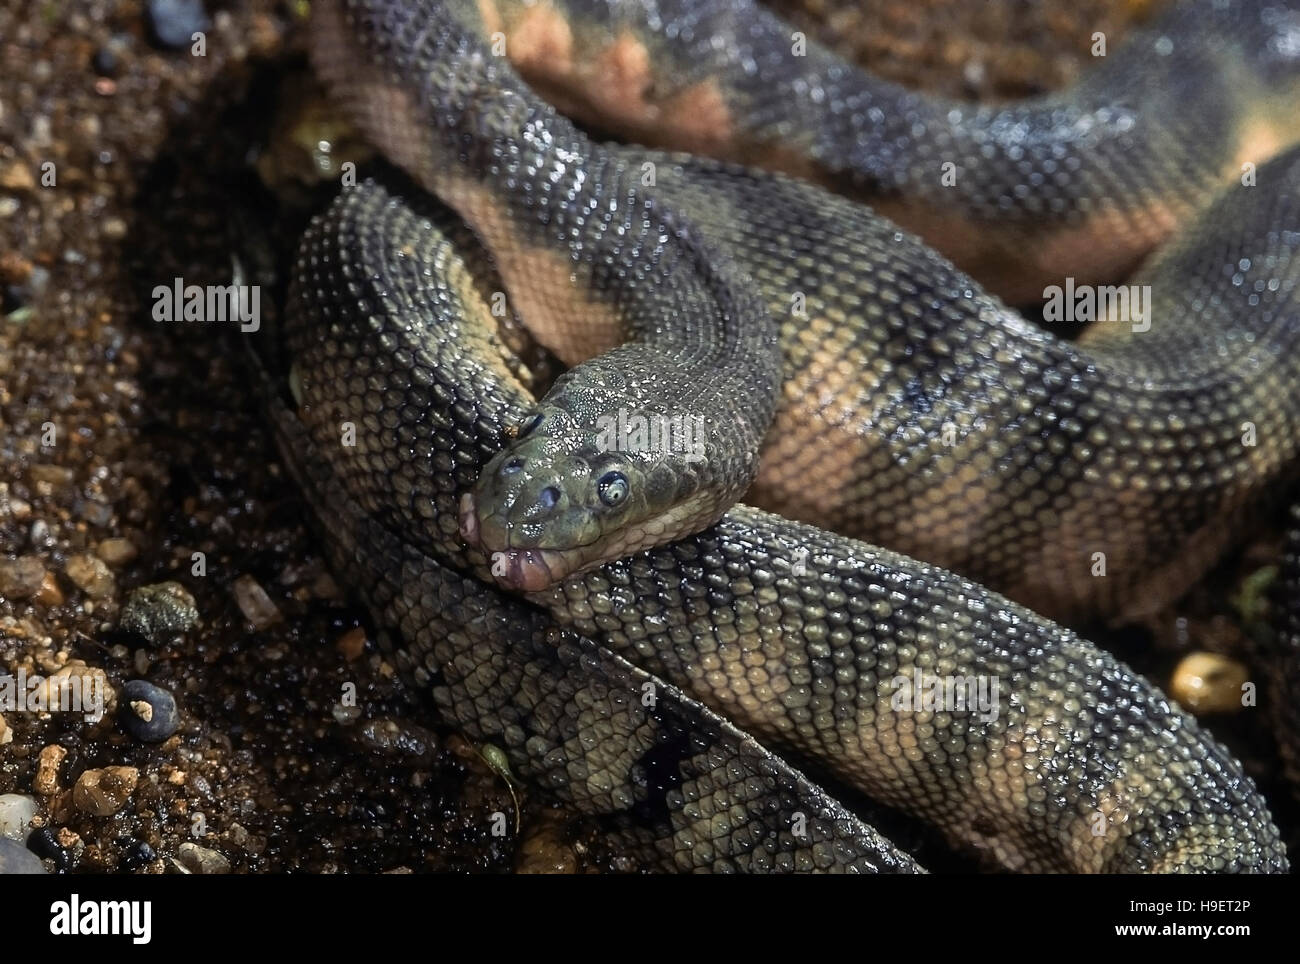 Nariz de gancho Enhydrina schistosa serpiente de mar. Cerrar la cabeza mostrando el detalle y escalas. Modelo de la costa de Mumbai, Maharashtra, India. Foto de stock